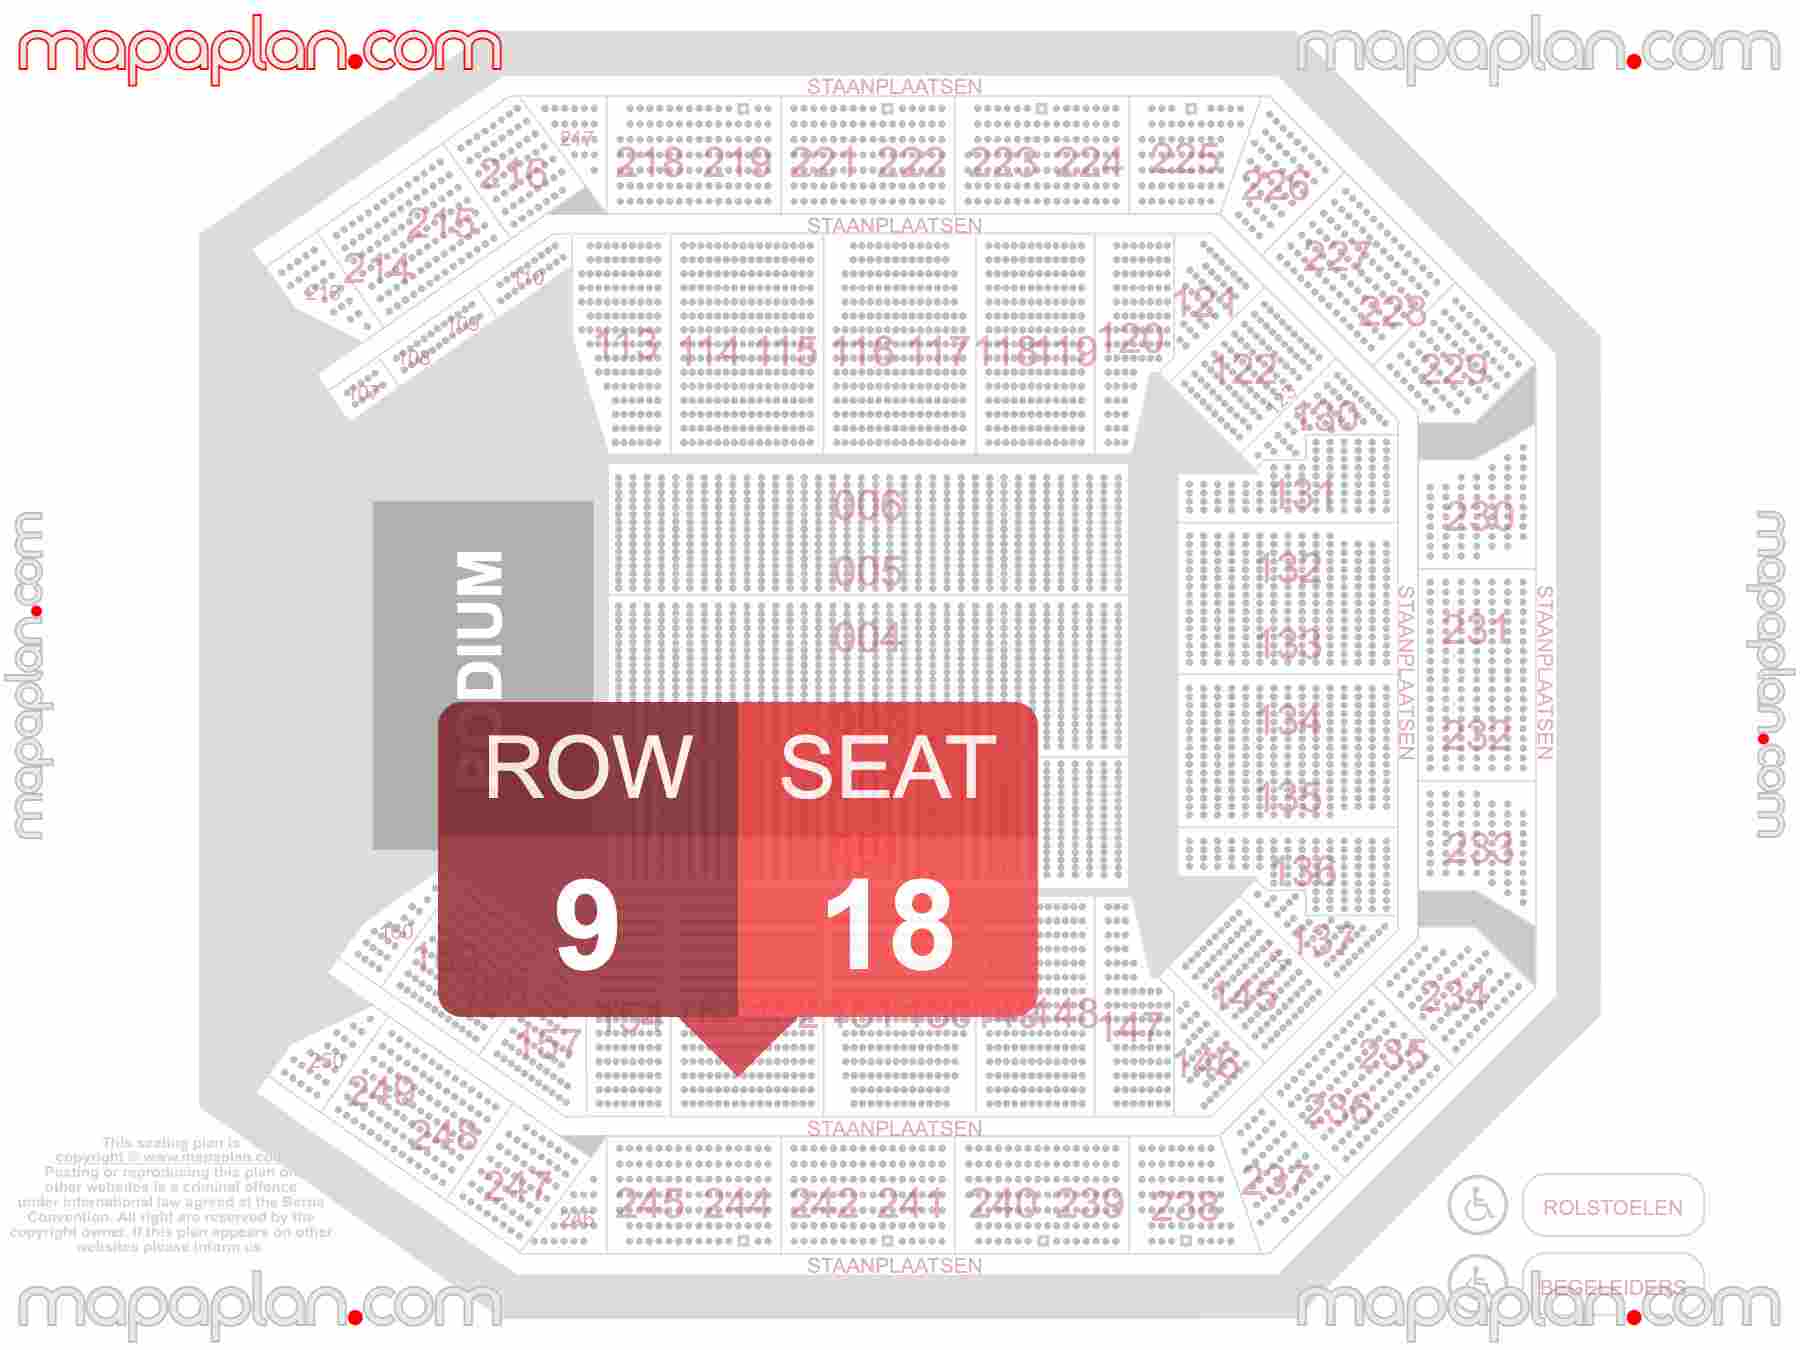 Antwerpen Lotto Arena seating plan Concert plattegrond met zitplaatsen nummering en rijnummers beste plaatsen blokken zaalplan - detailed seat numbers and row numbering plan with interactive map map layout